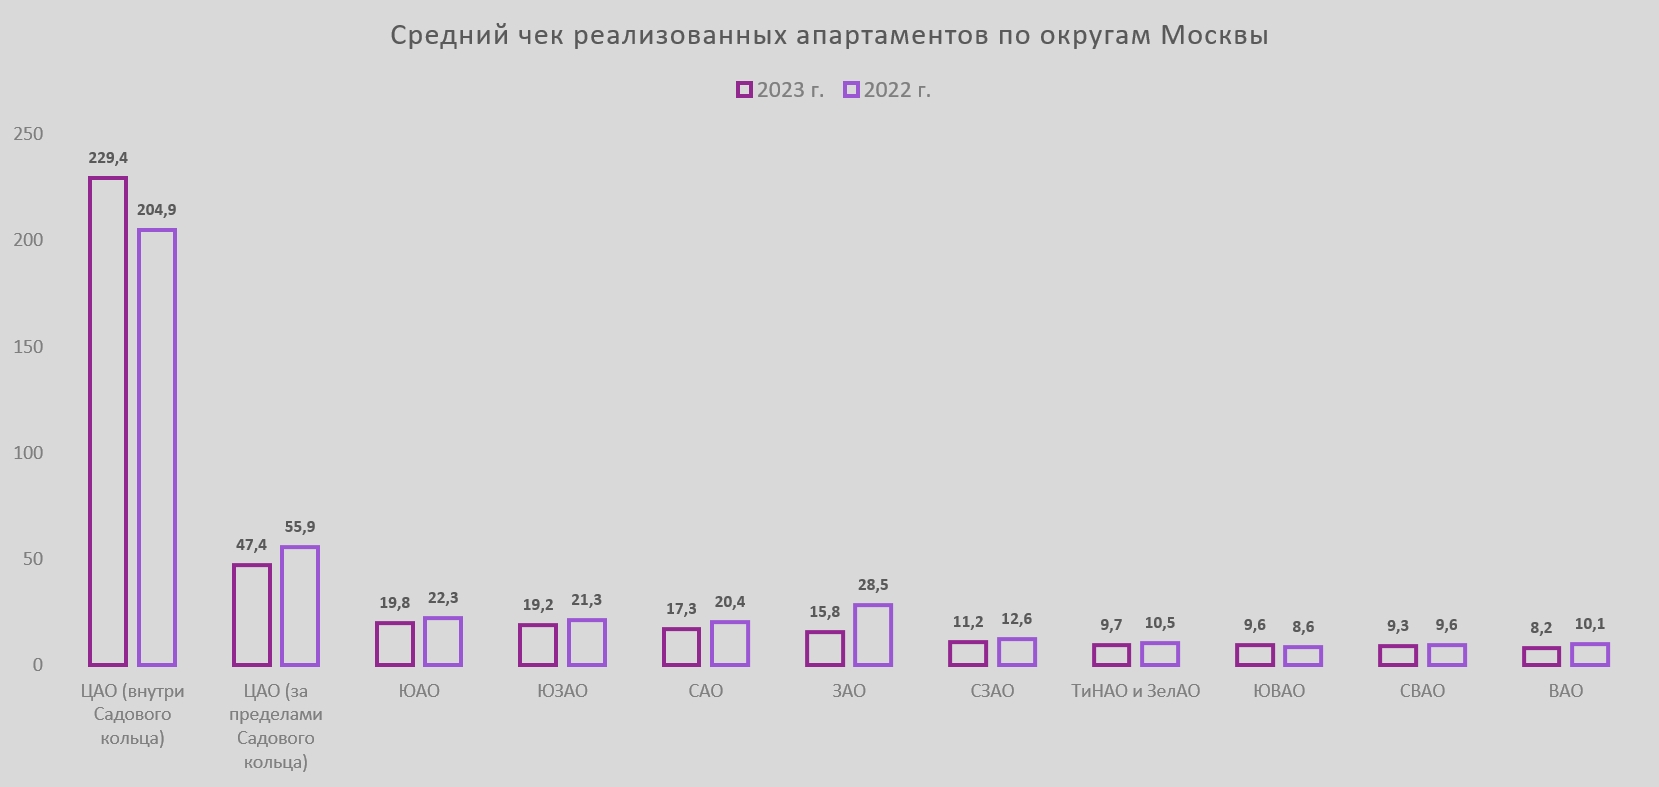 Средний чек апартамента в Москве за год уменьшился на 2 млн рублей